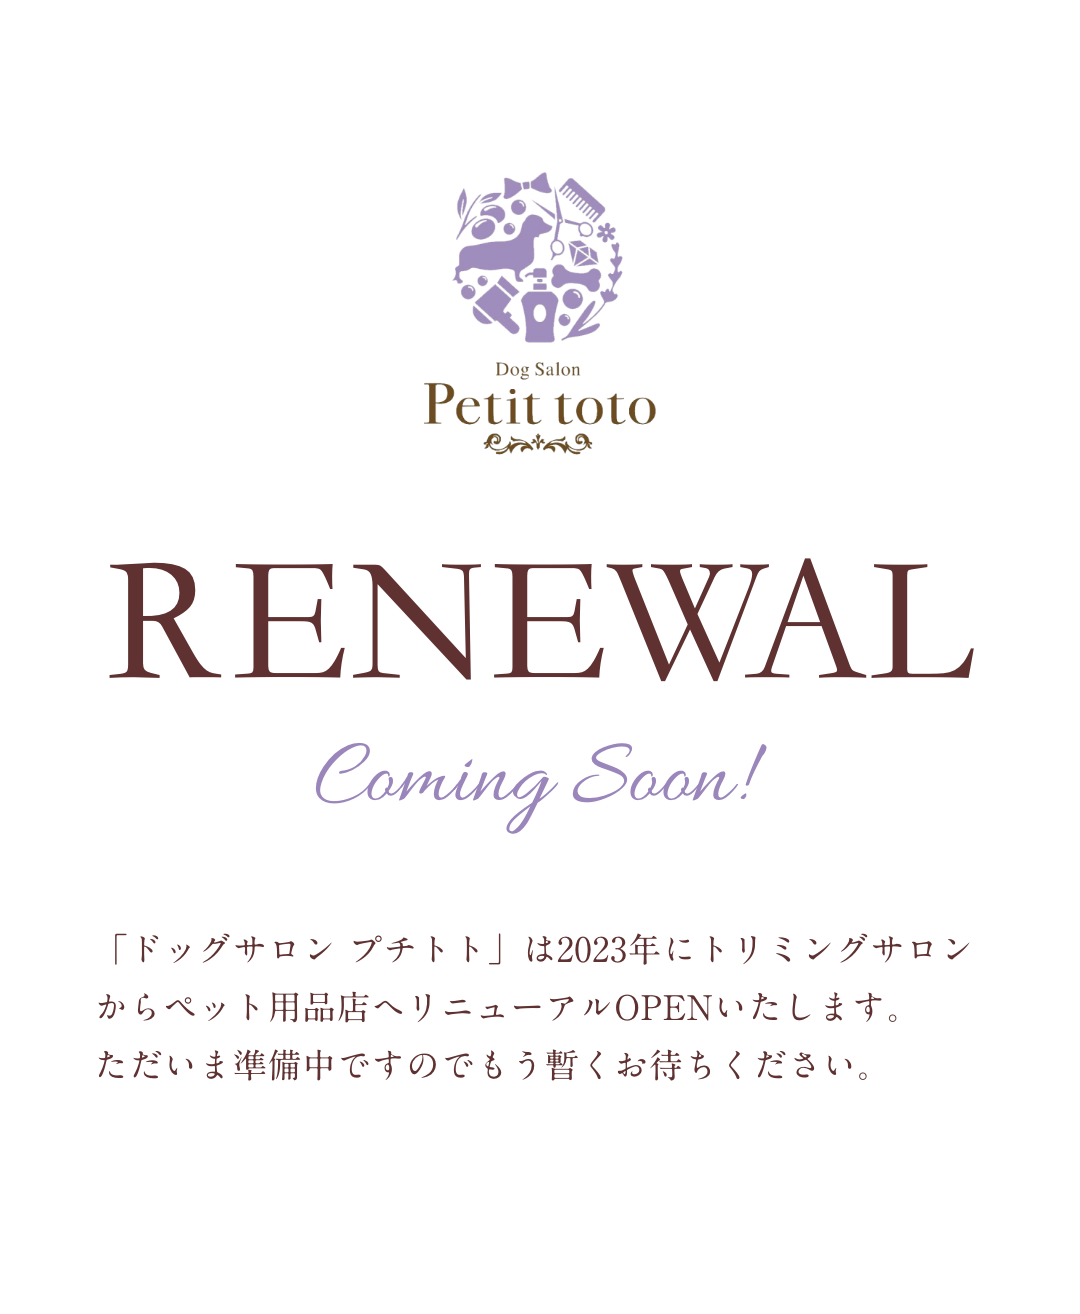 RENEWAL Coming Soon!「ドッグサロン プチトト」は2023年にトリミングサロンからペット用品店へリニューアルOPENいたします。ただいま準備中ですのでもう暫くお待ちください。